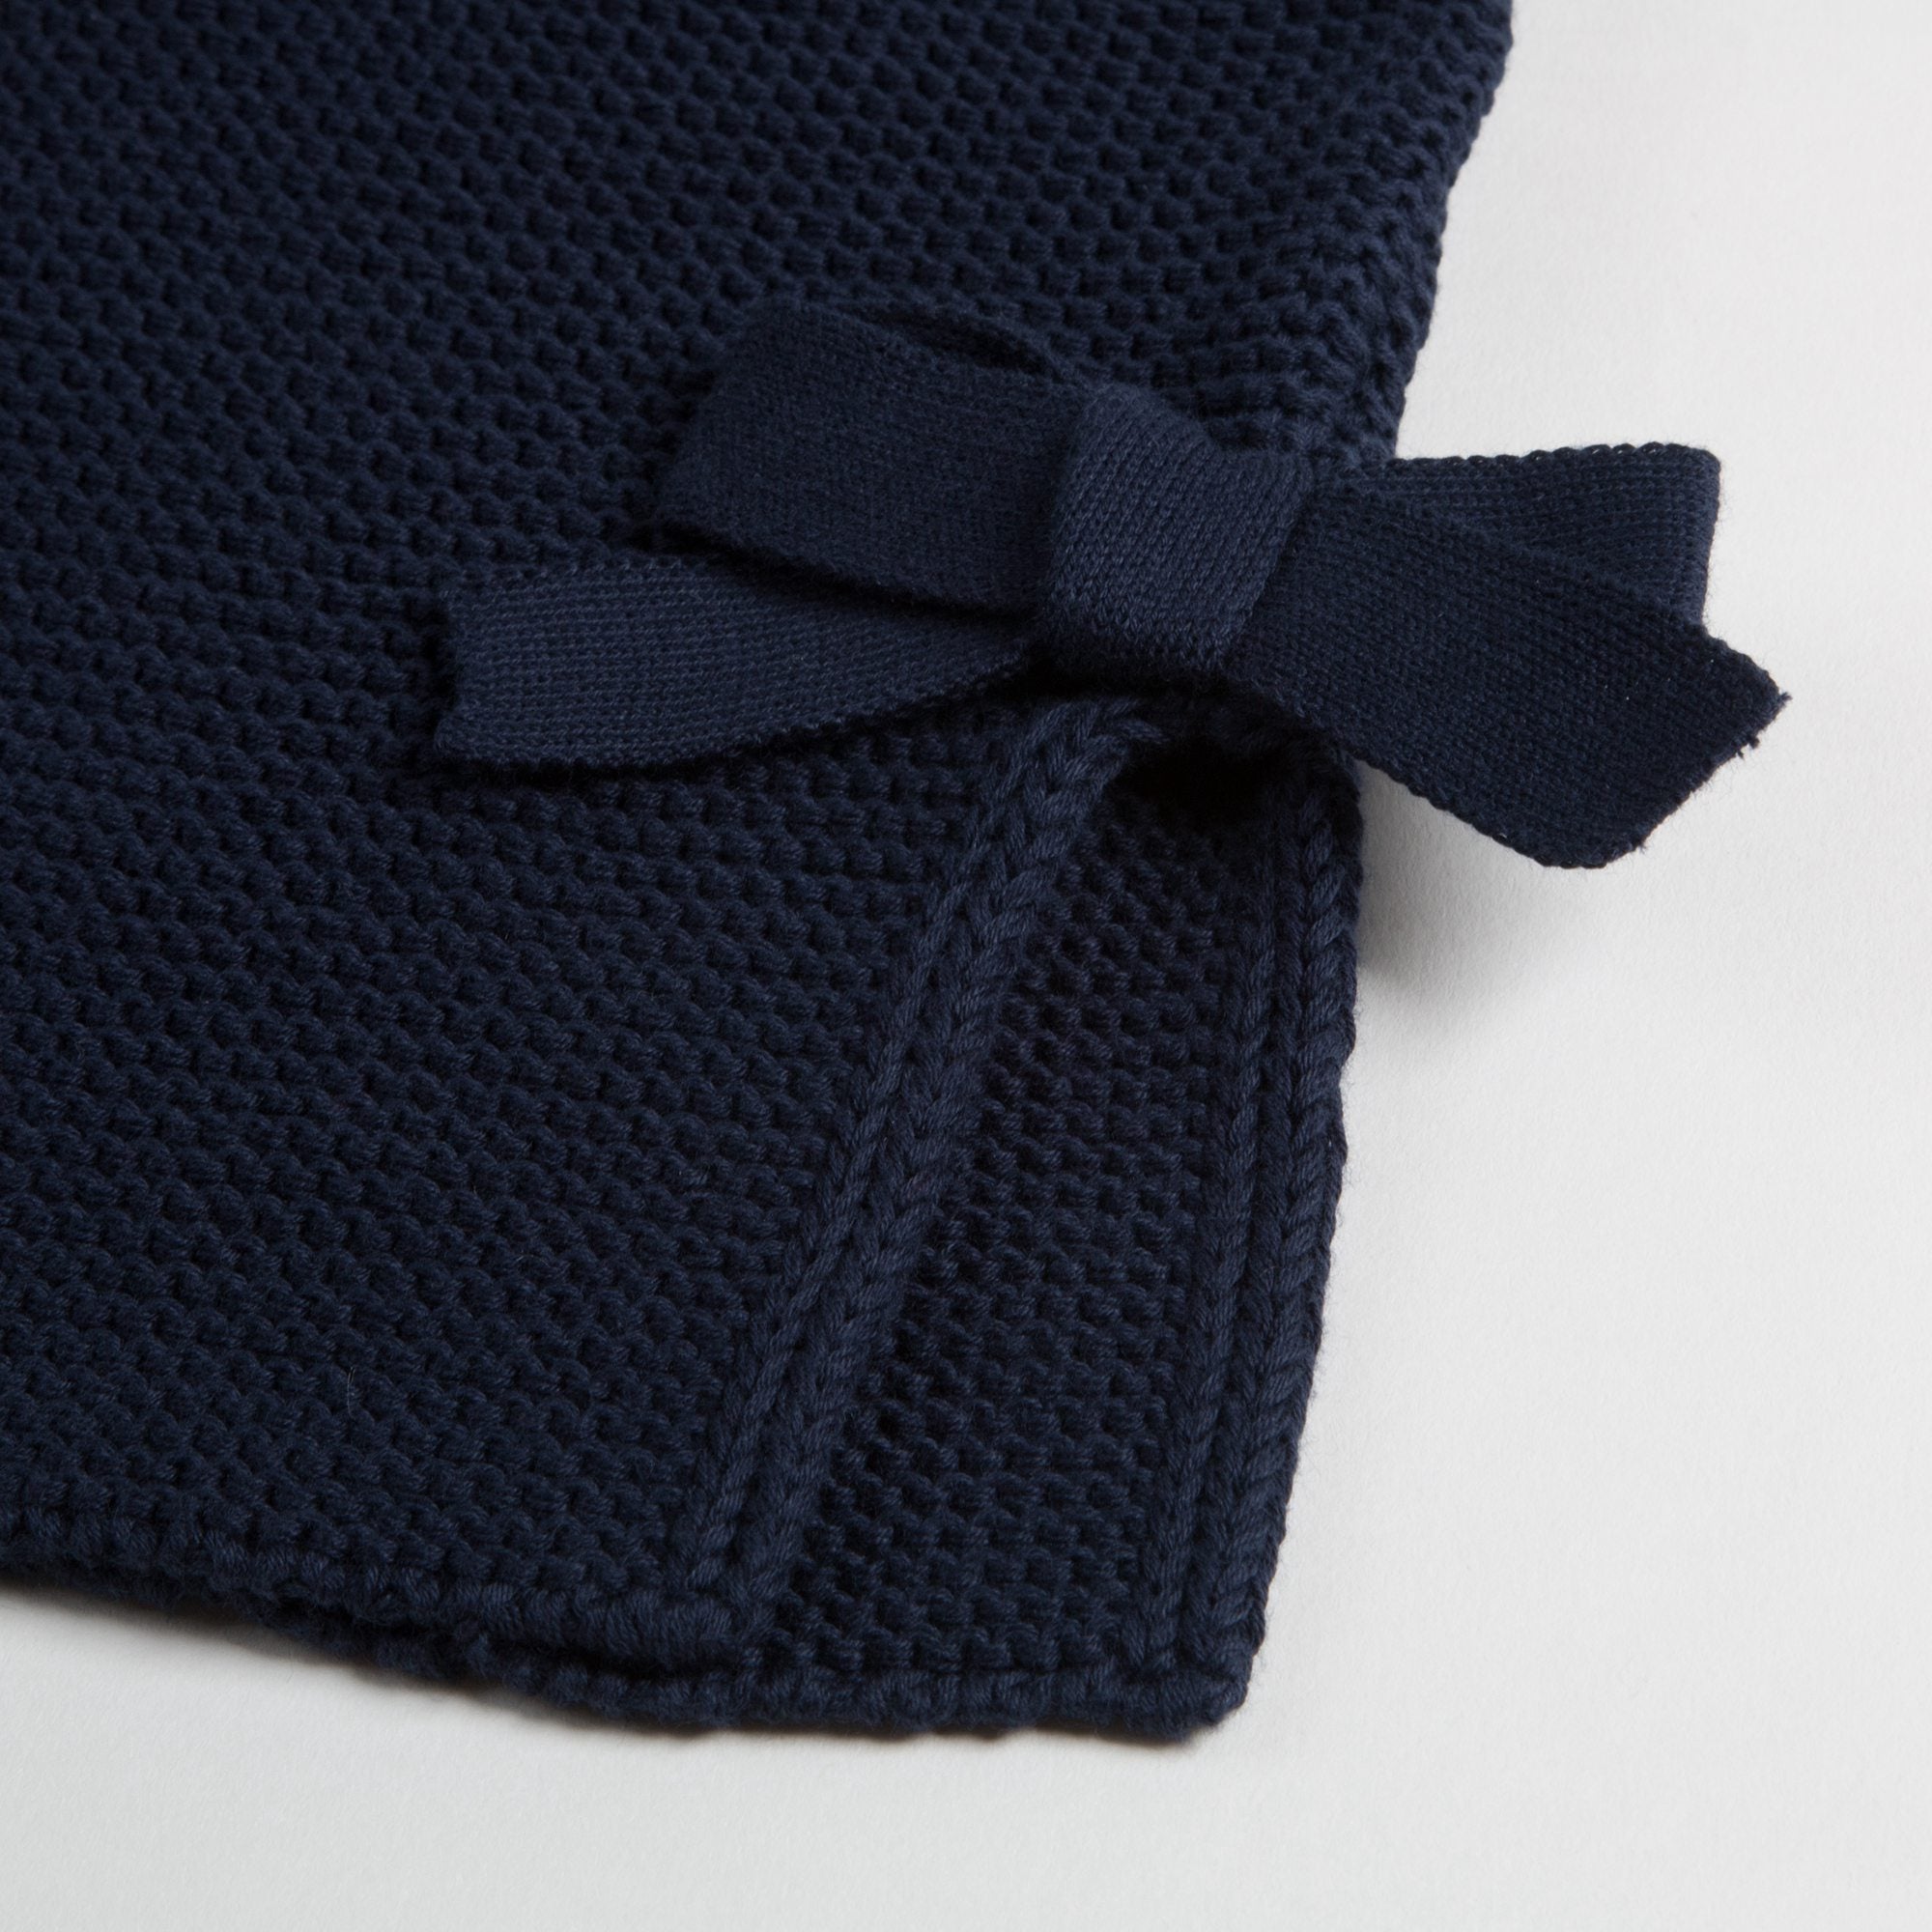 Girls Dark Blue Cotton Sweater